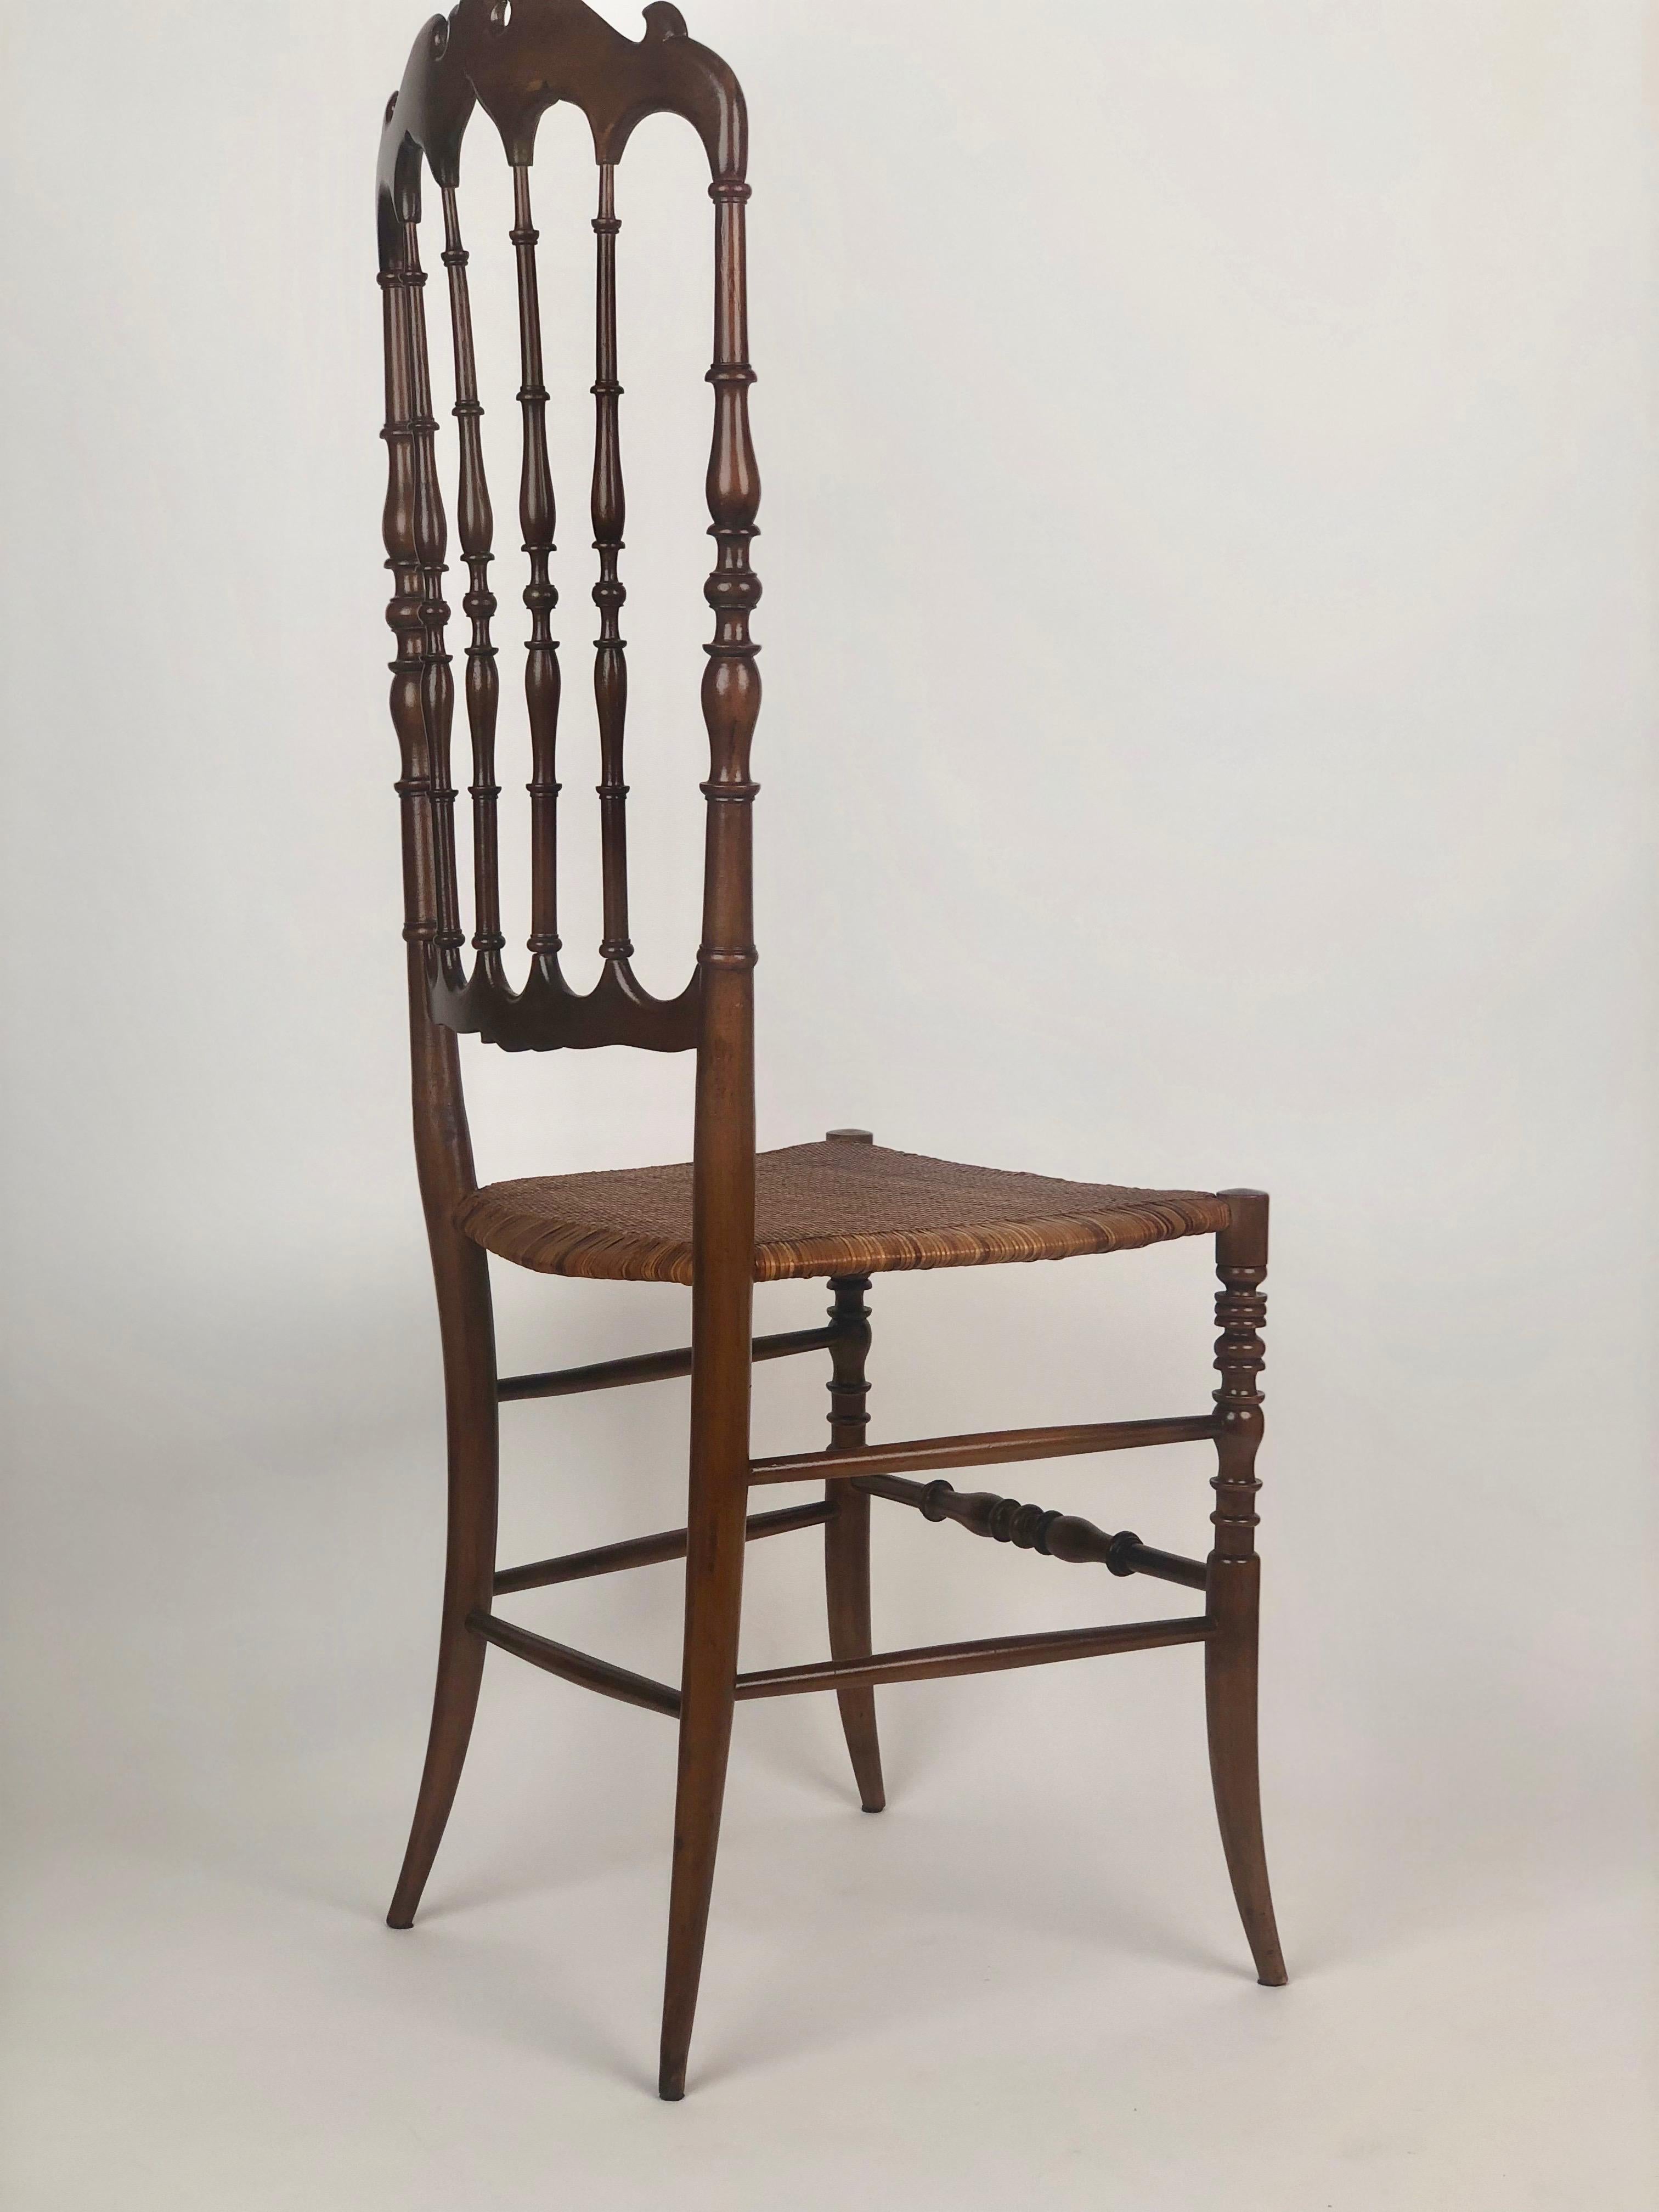 Ensemble de deux chaises Chiavari produites dans les années 1950.
Les chaises ont un siège en rotin en excellent état et un dossier haut (66 cm).
Le cadre en bois de cerisier a  a été rafraîchi et a reçu une belle couleur d'origine.